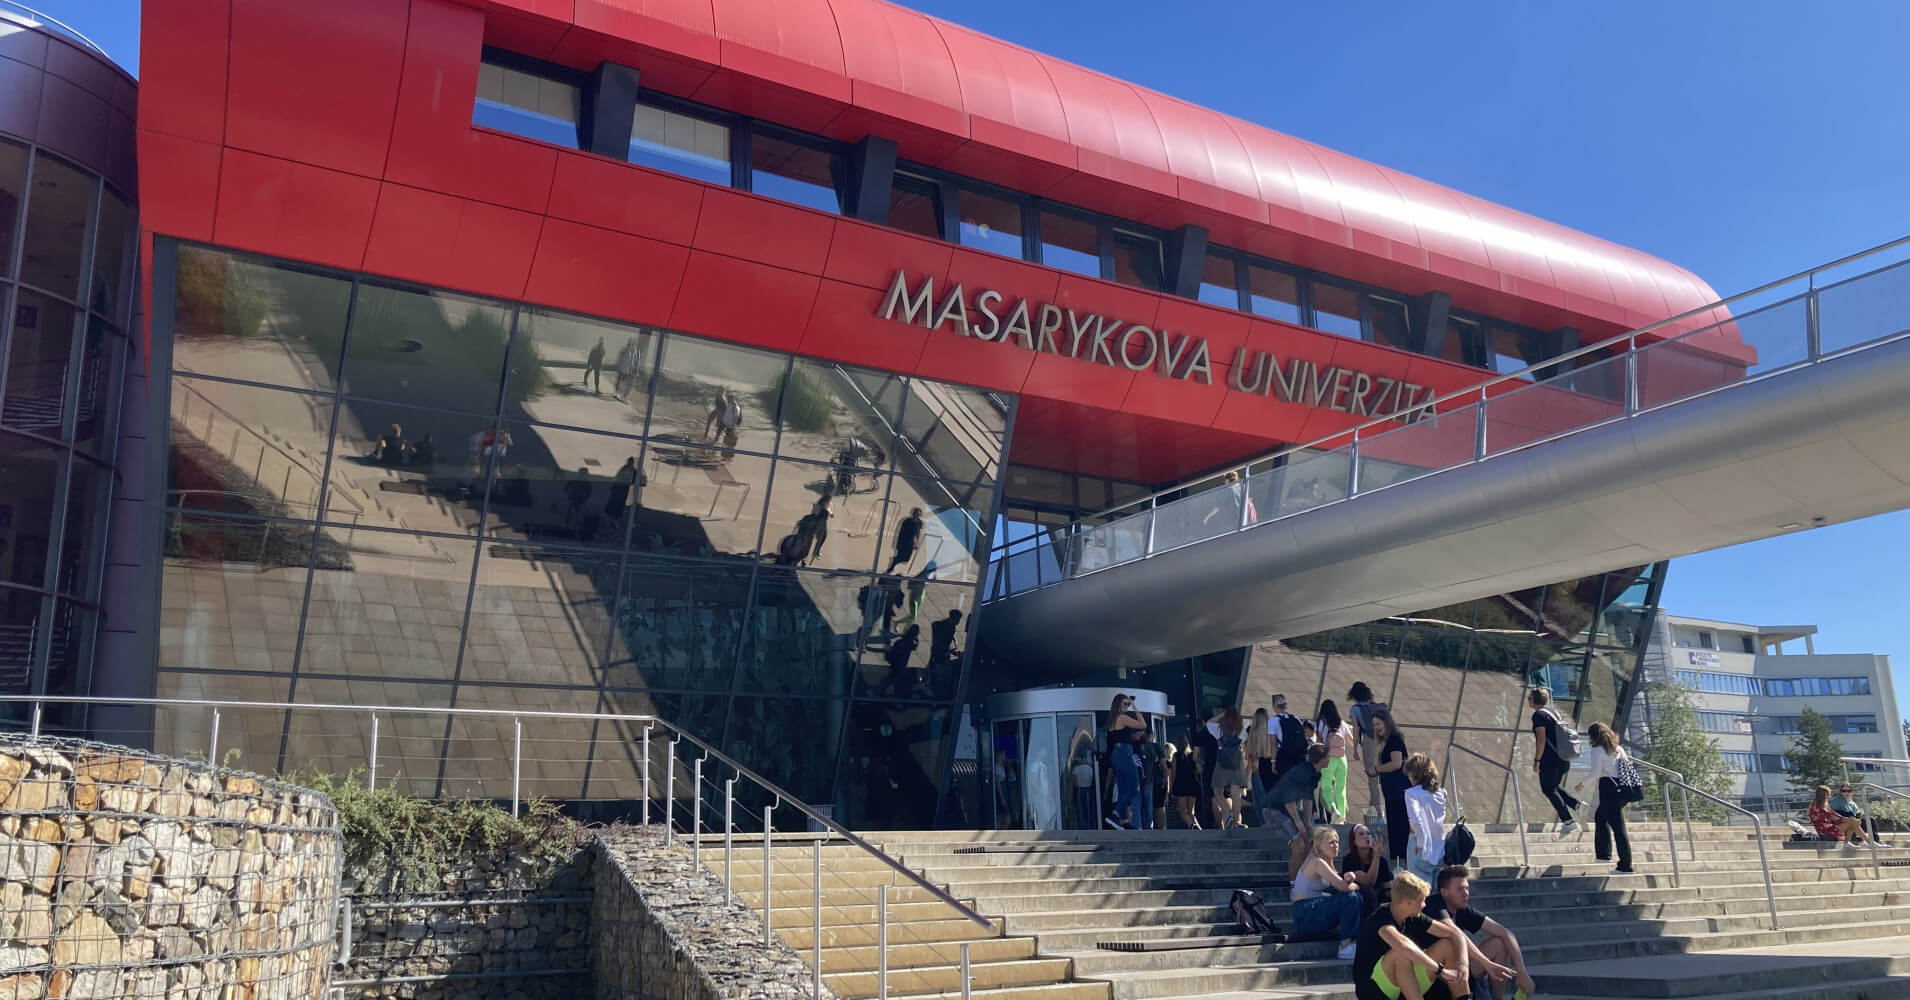 Hệ thống cơ sở vật chất hiện đại của Đại học Masaryk